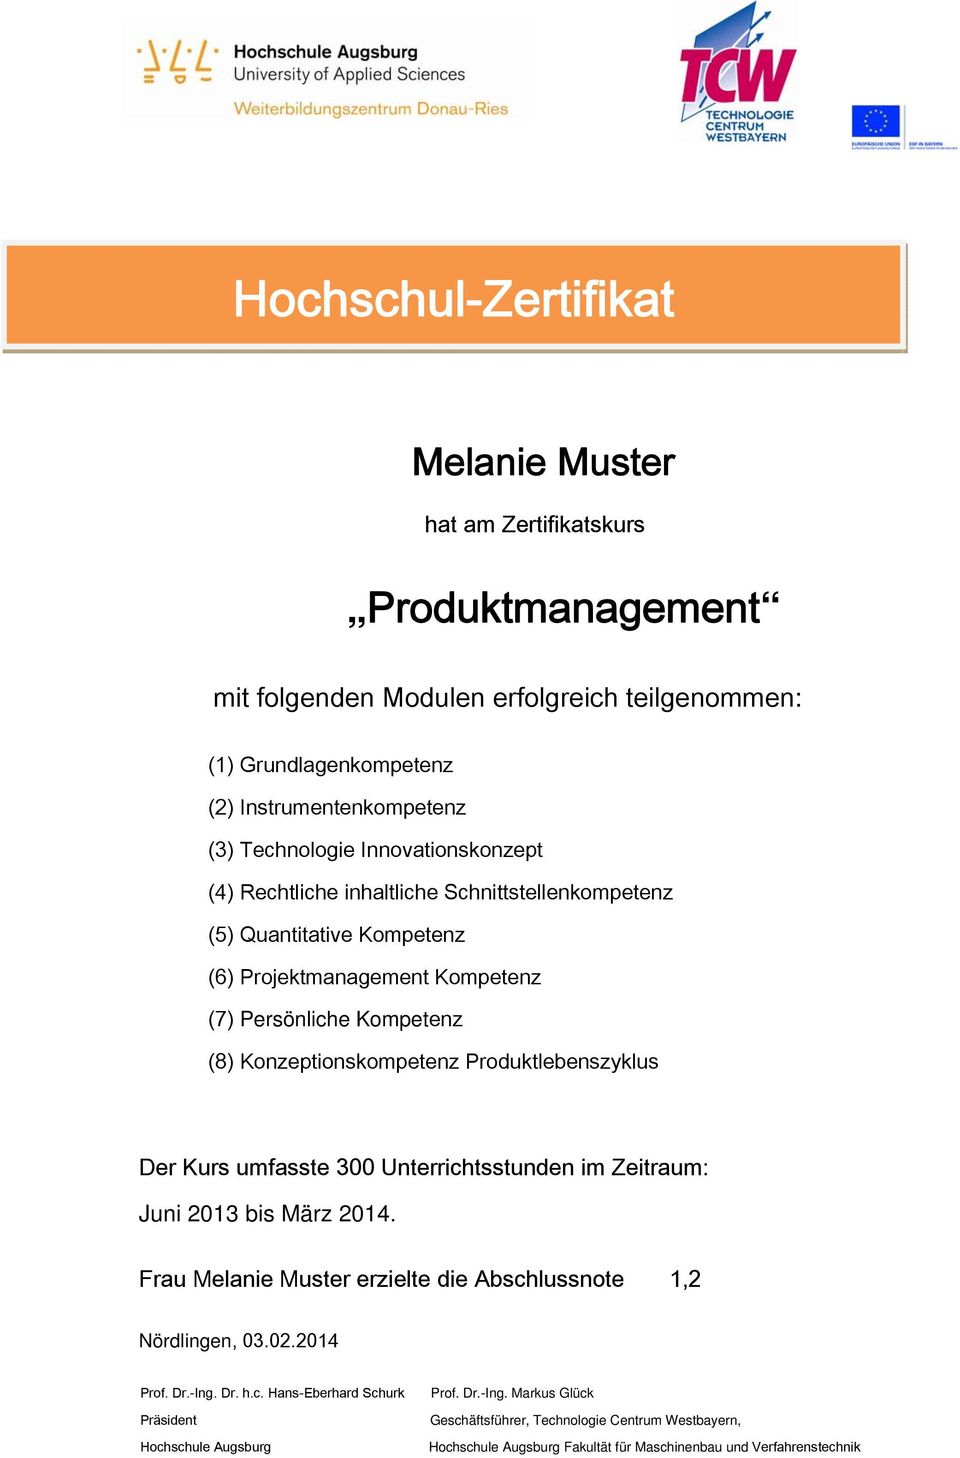 Produktlebenszyklus Der Kurs umfasste 300 Unterrichtsstunden im Zeitraum: Juni 2013 bis März 2014. Frau Melanie Muster erzielte die Abschlussnote 1,2 Nördlingen, 03.02.2014 Prof. Dr.-Ing. Dr. h.